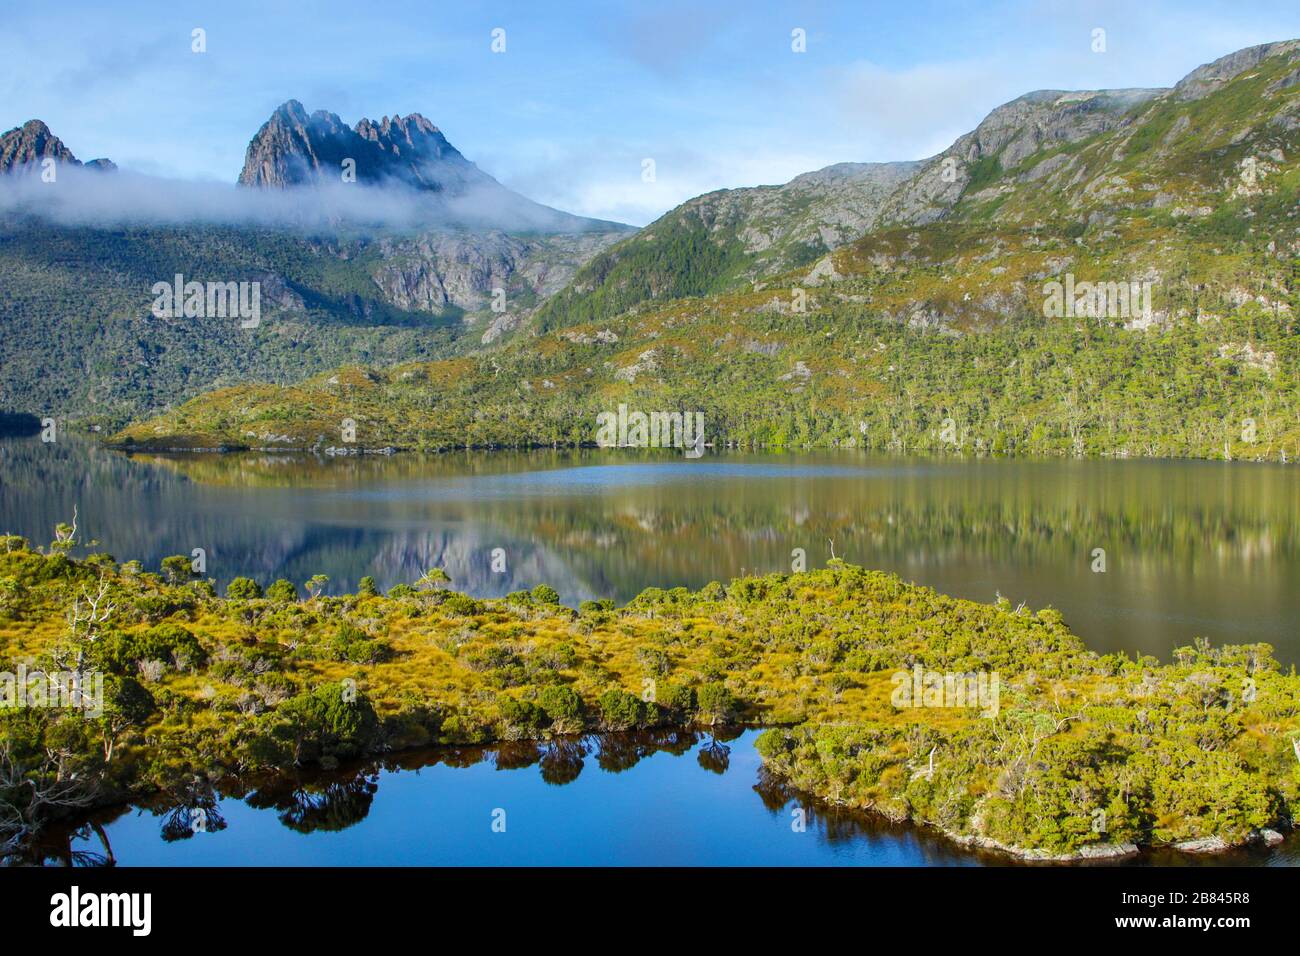 Teich und Landschaft im Zentrum Tasmaniens Australien Stockfoto